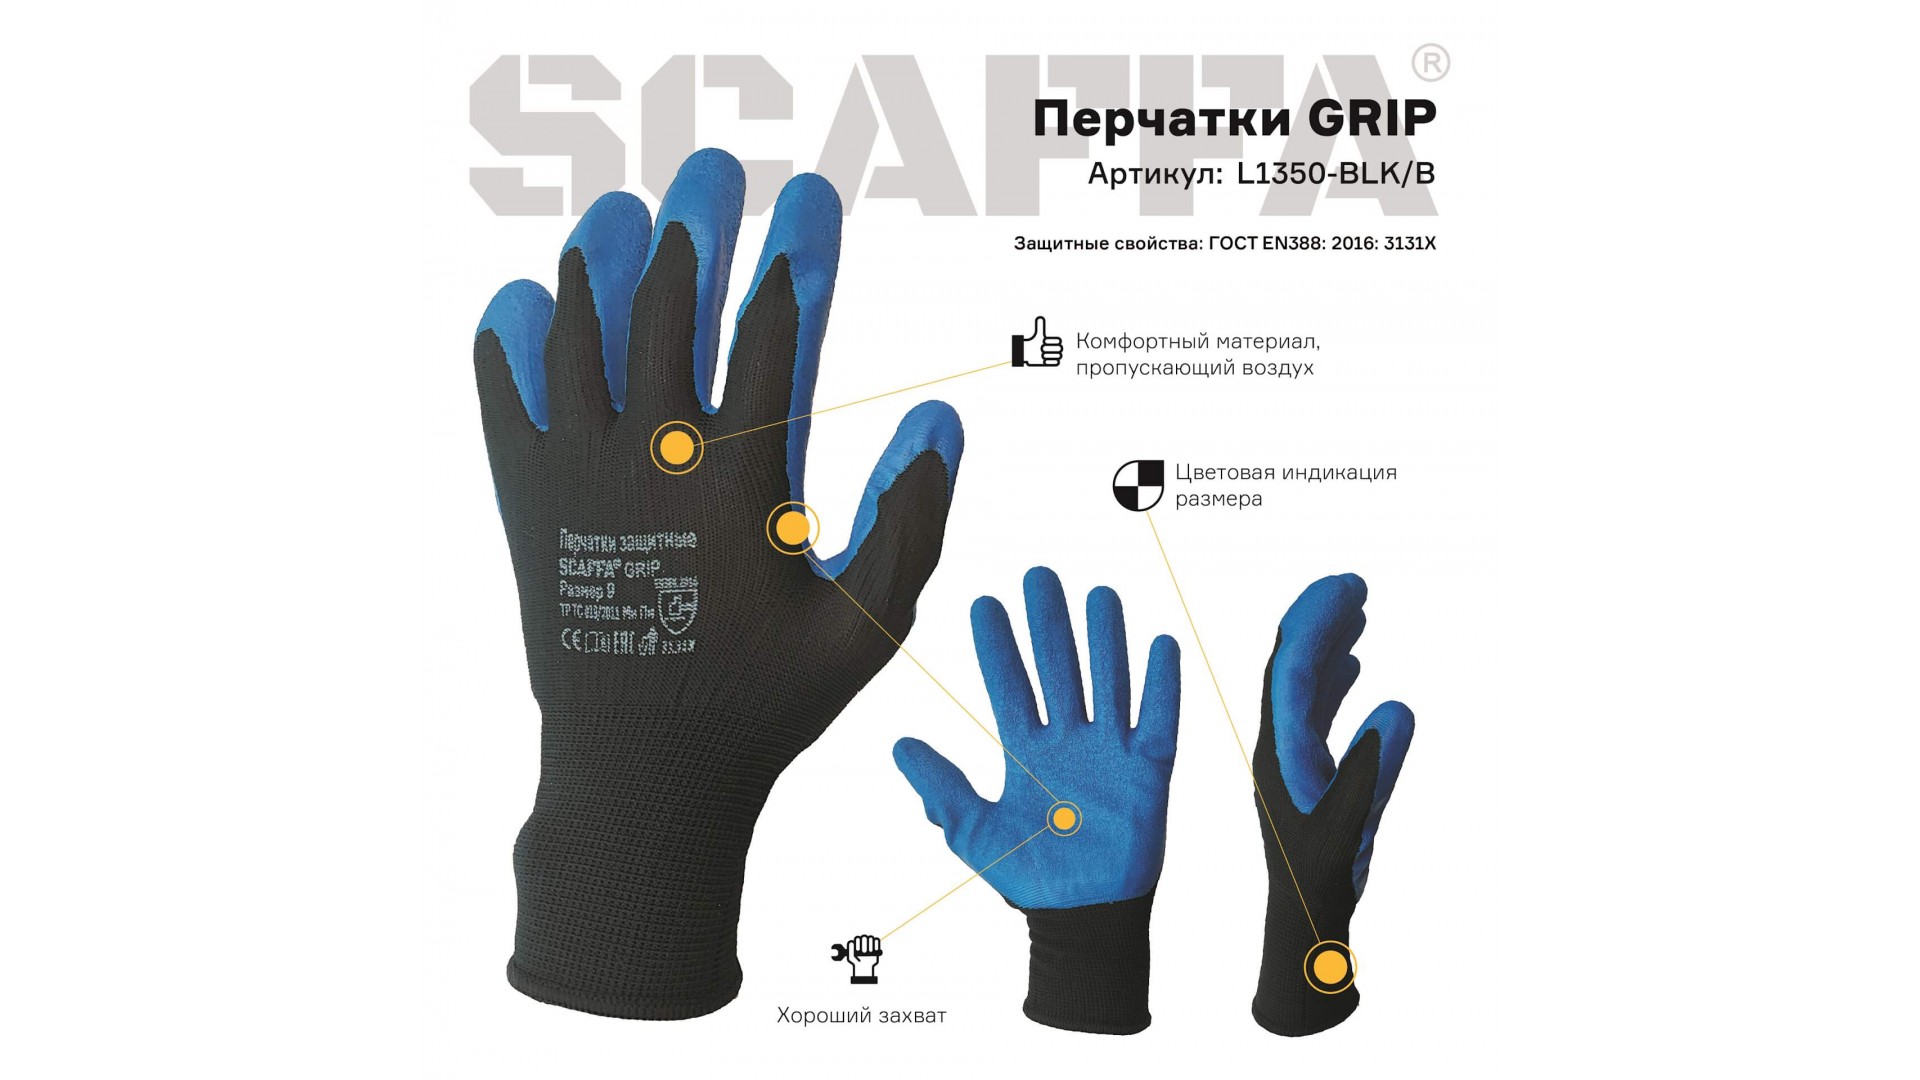 Перчатки Grip для защиты от ОПЗ и механических воздействий